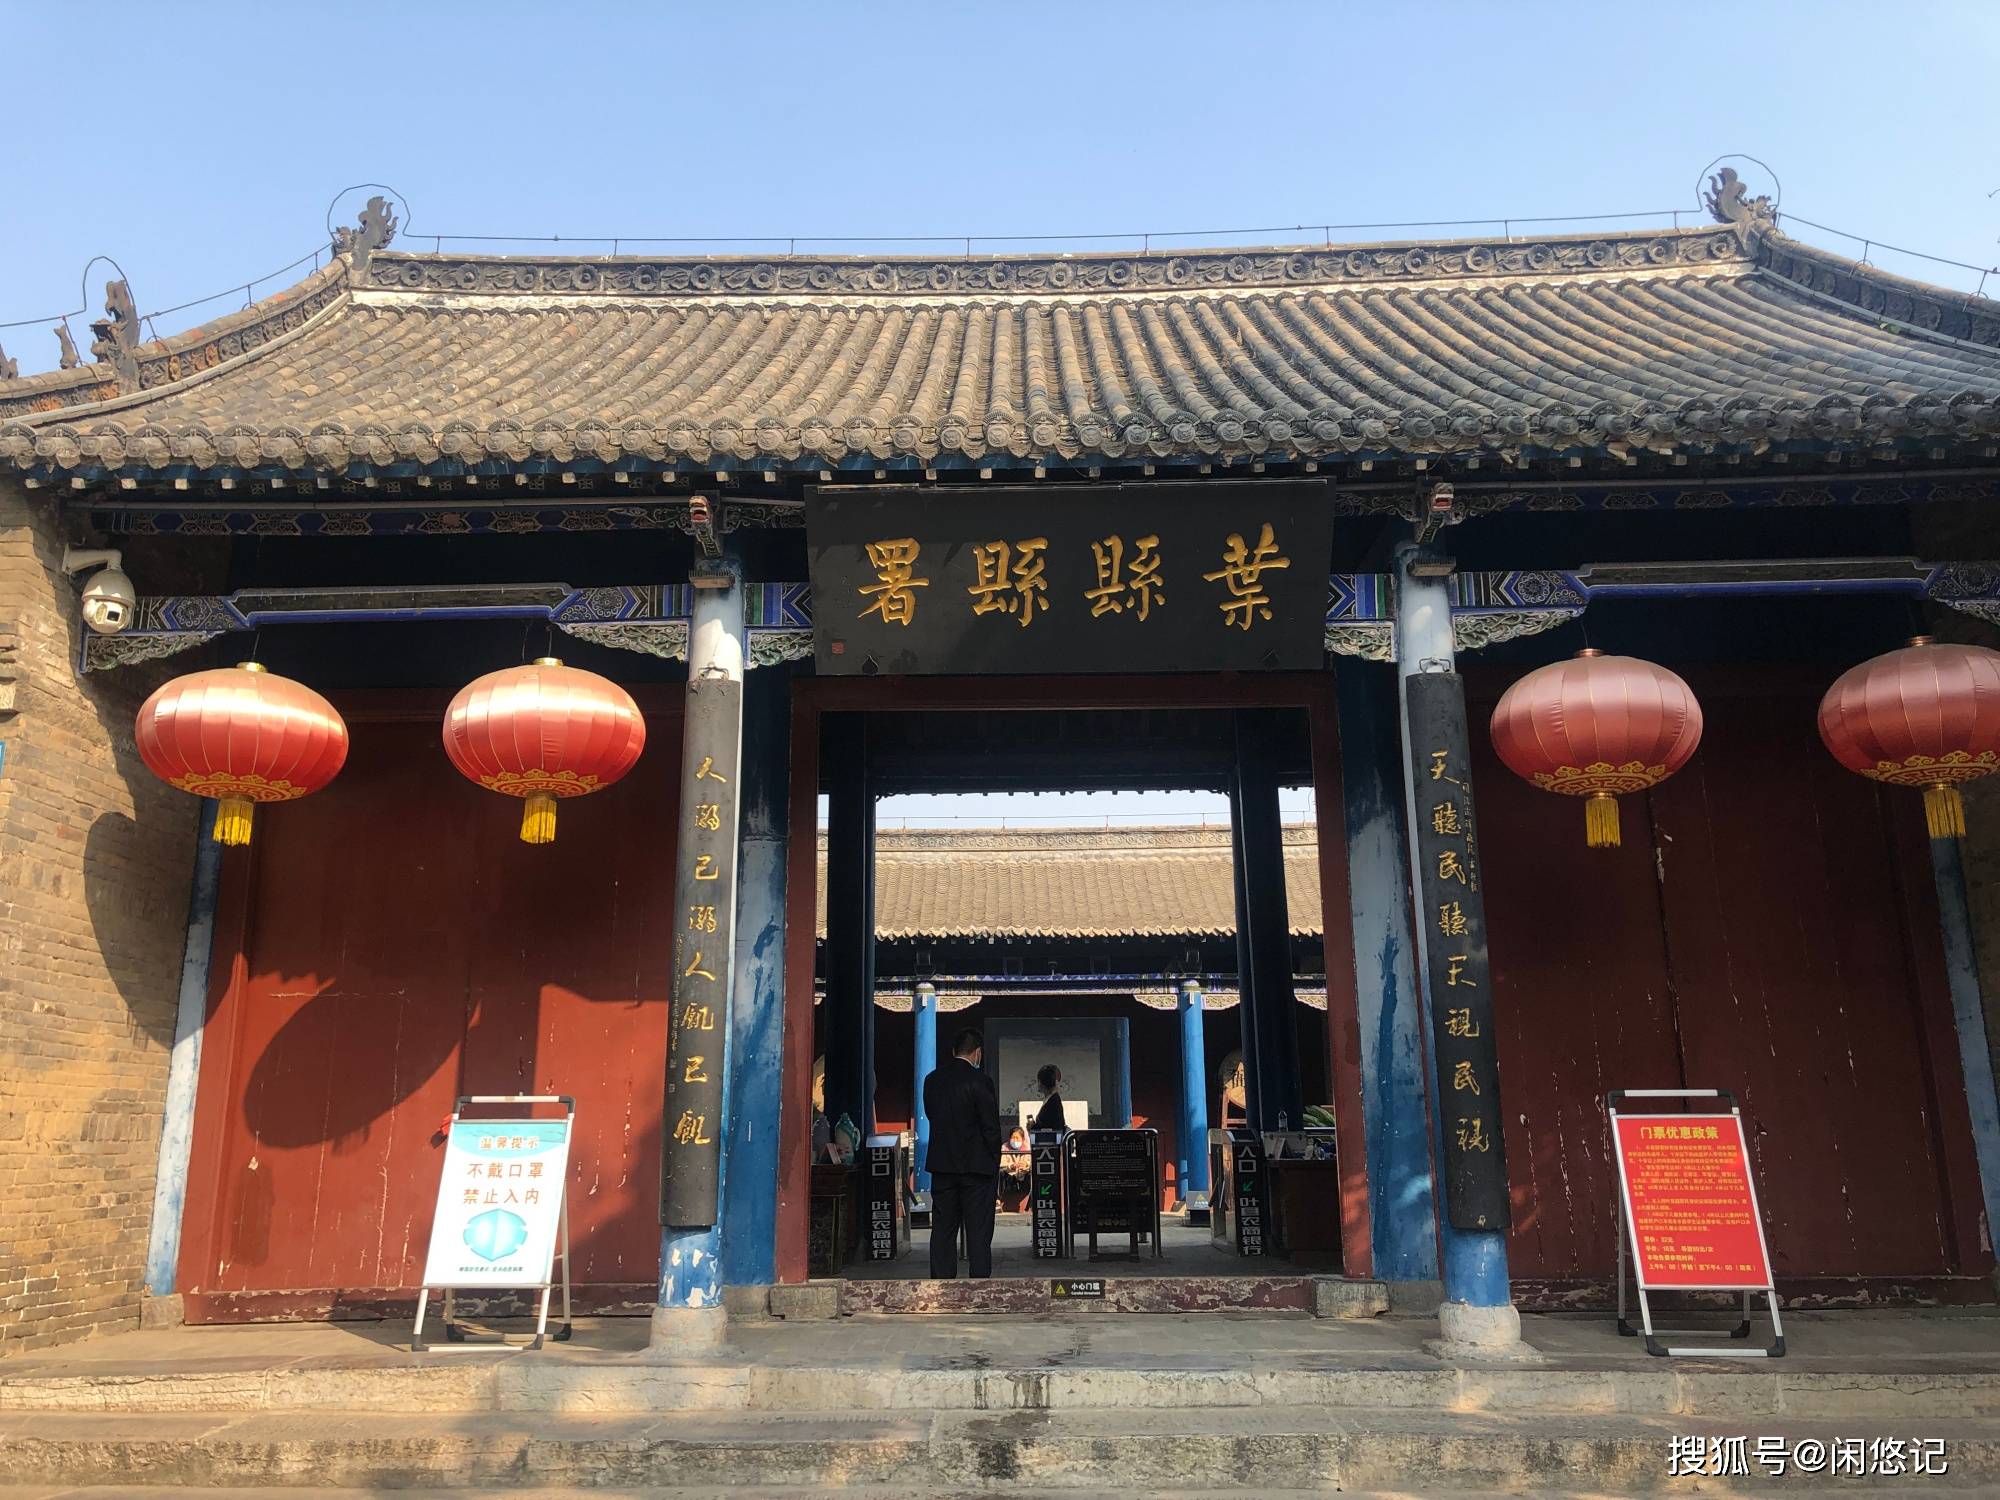 仅有3处,河南叶县县衙是目前中国现存的古代衙署中唯一的明代县衙建筑